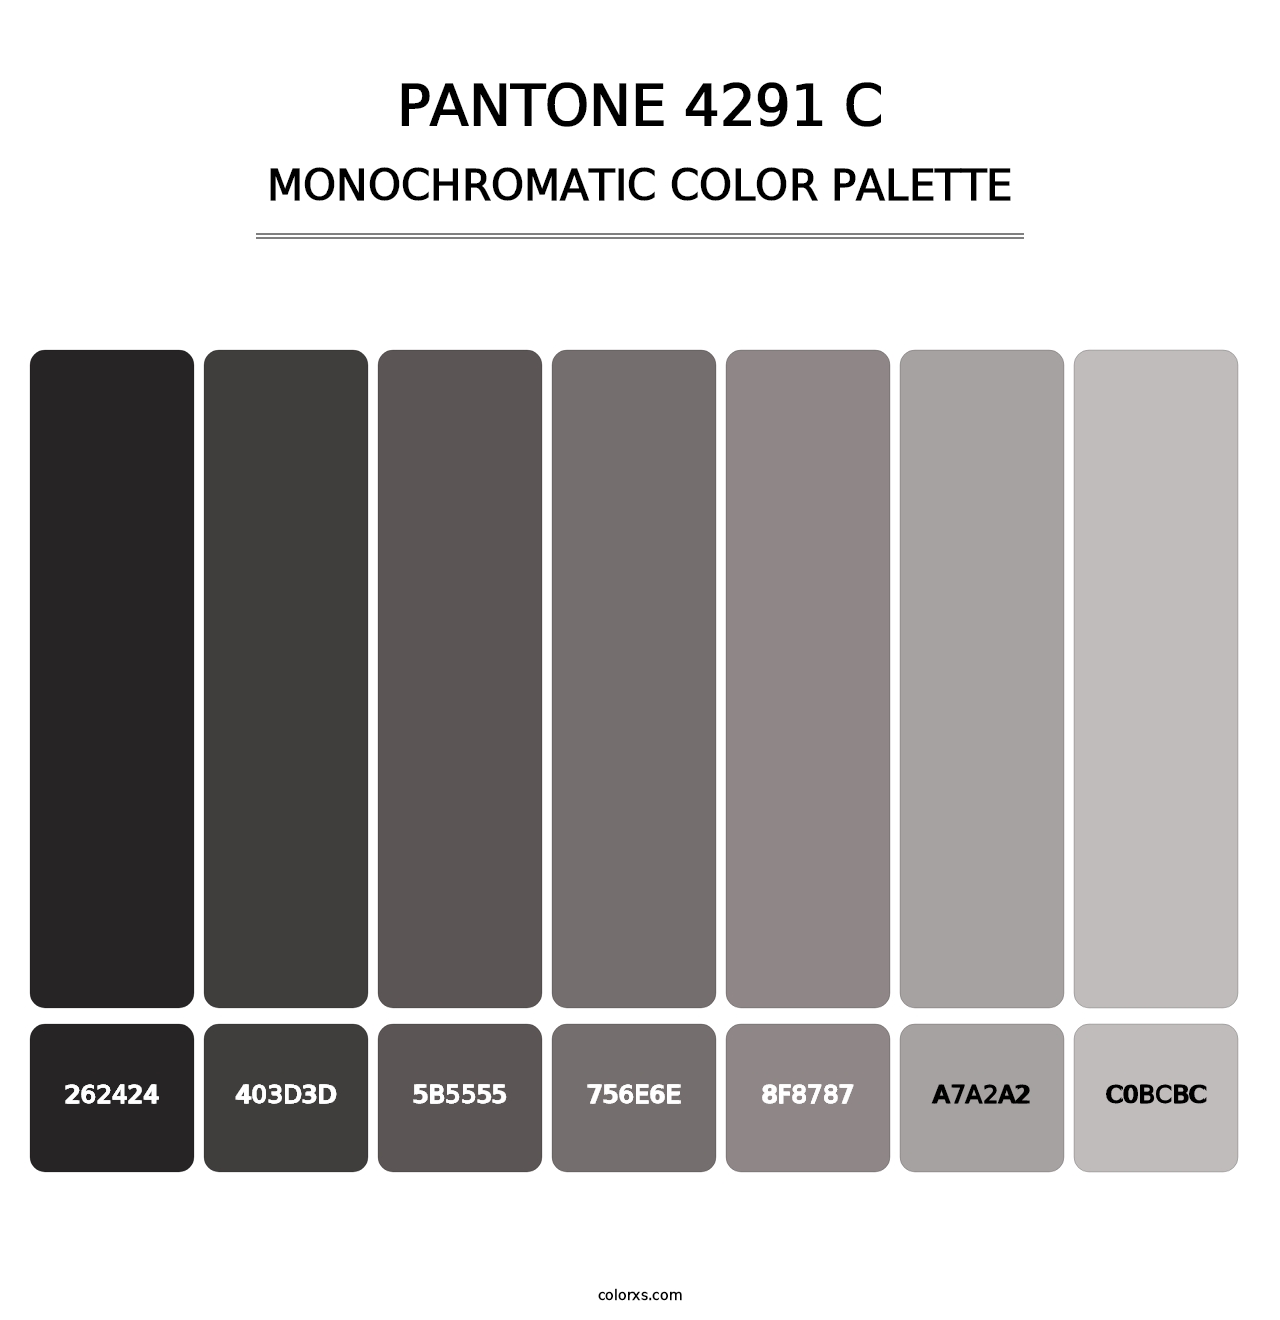 PANTONE 4291 C - Monochromatic Color Palette